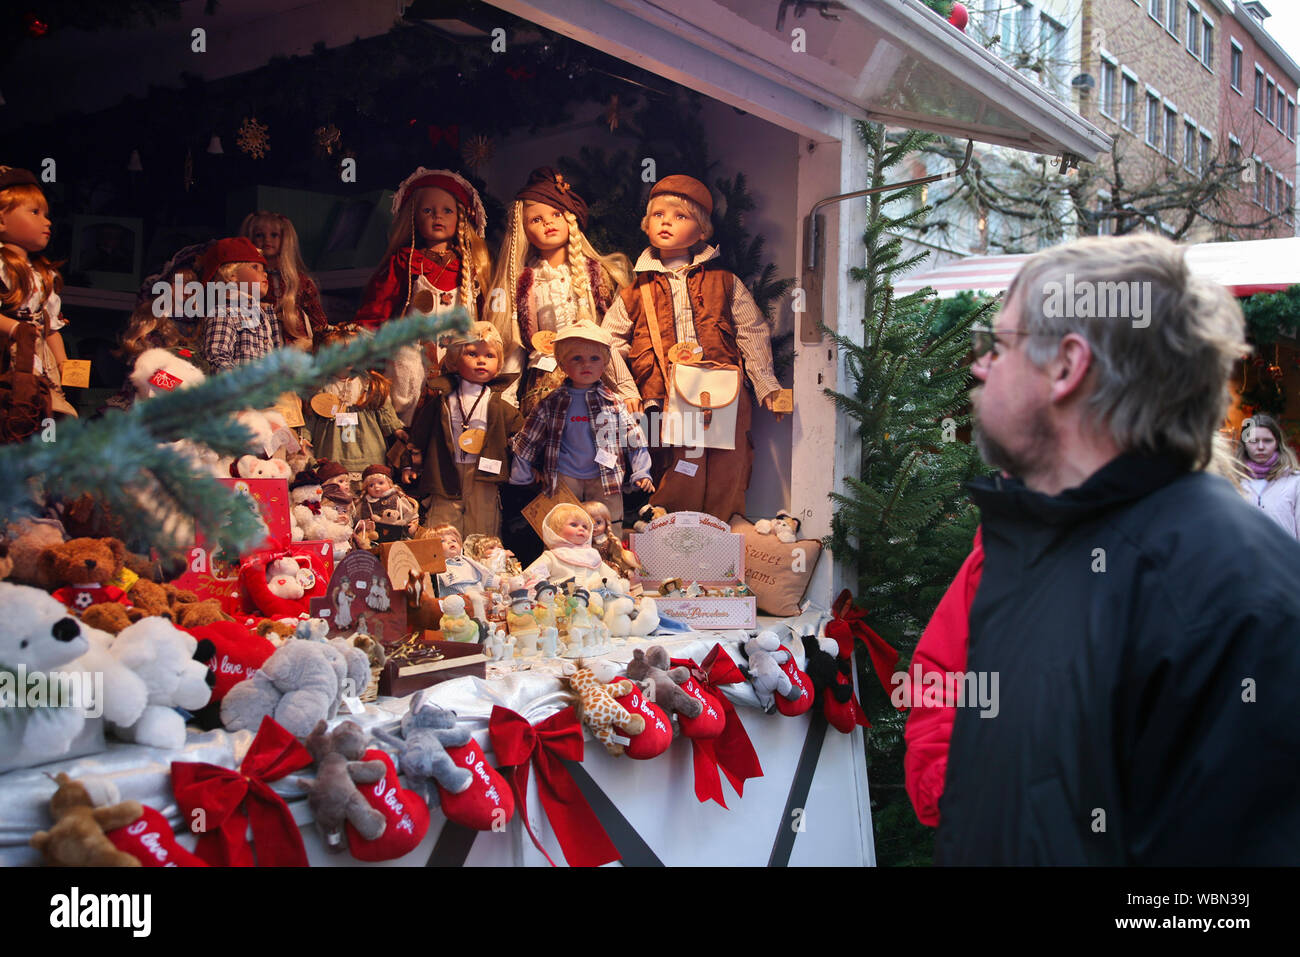 Foire de Noël Lübeck Allemagne les étals du marché Banque D'Images